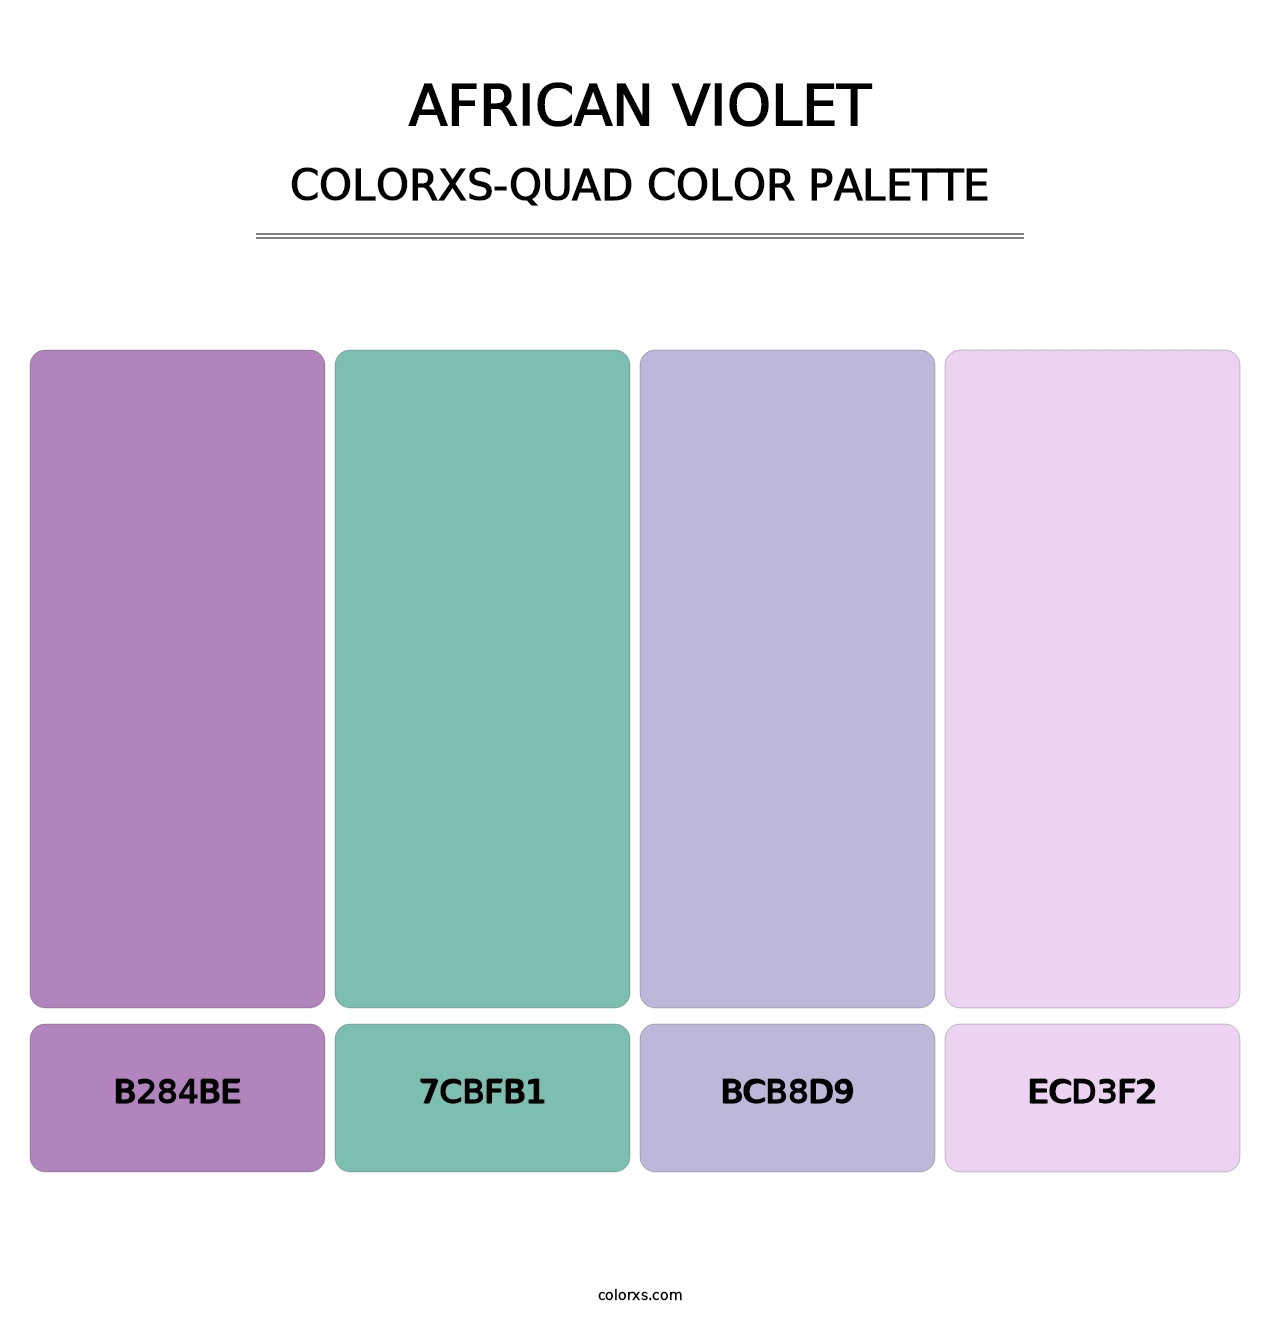 African Violet - Colorxs Quad Palette